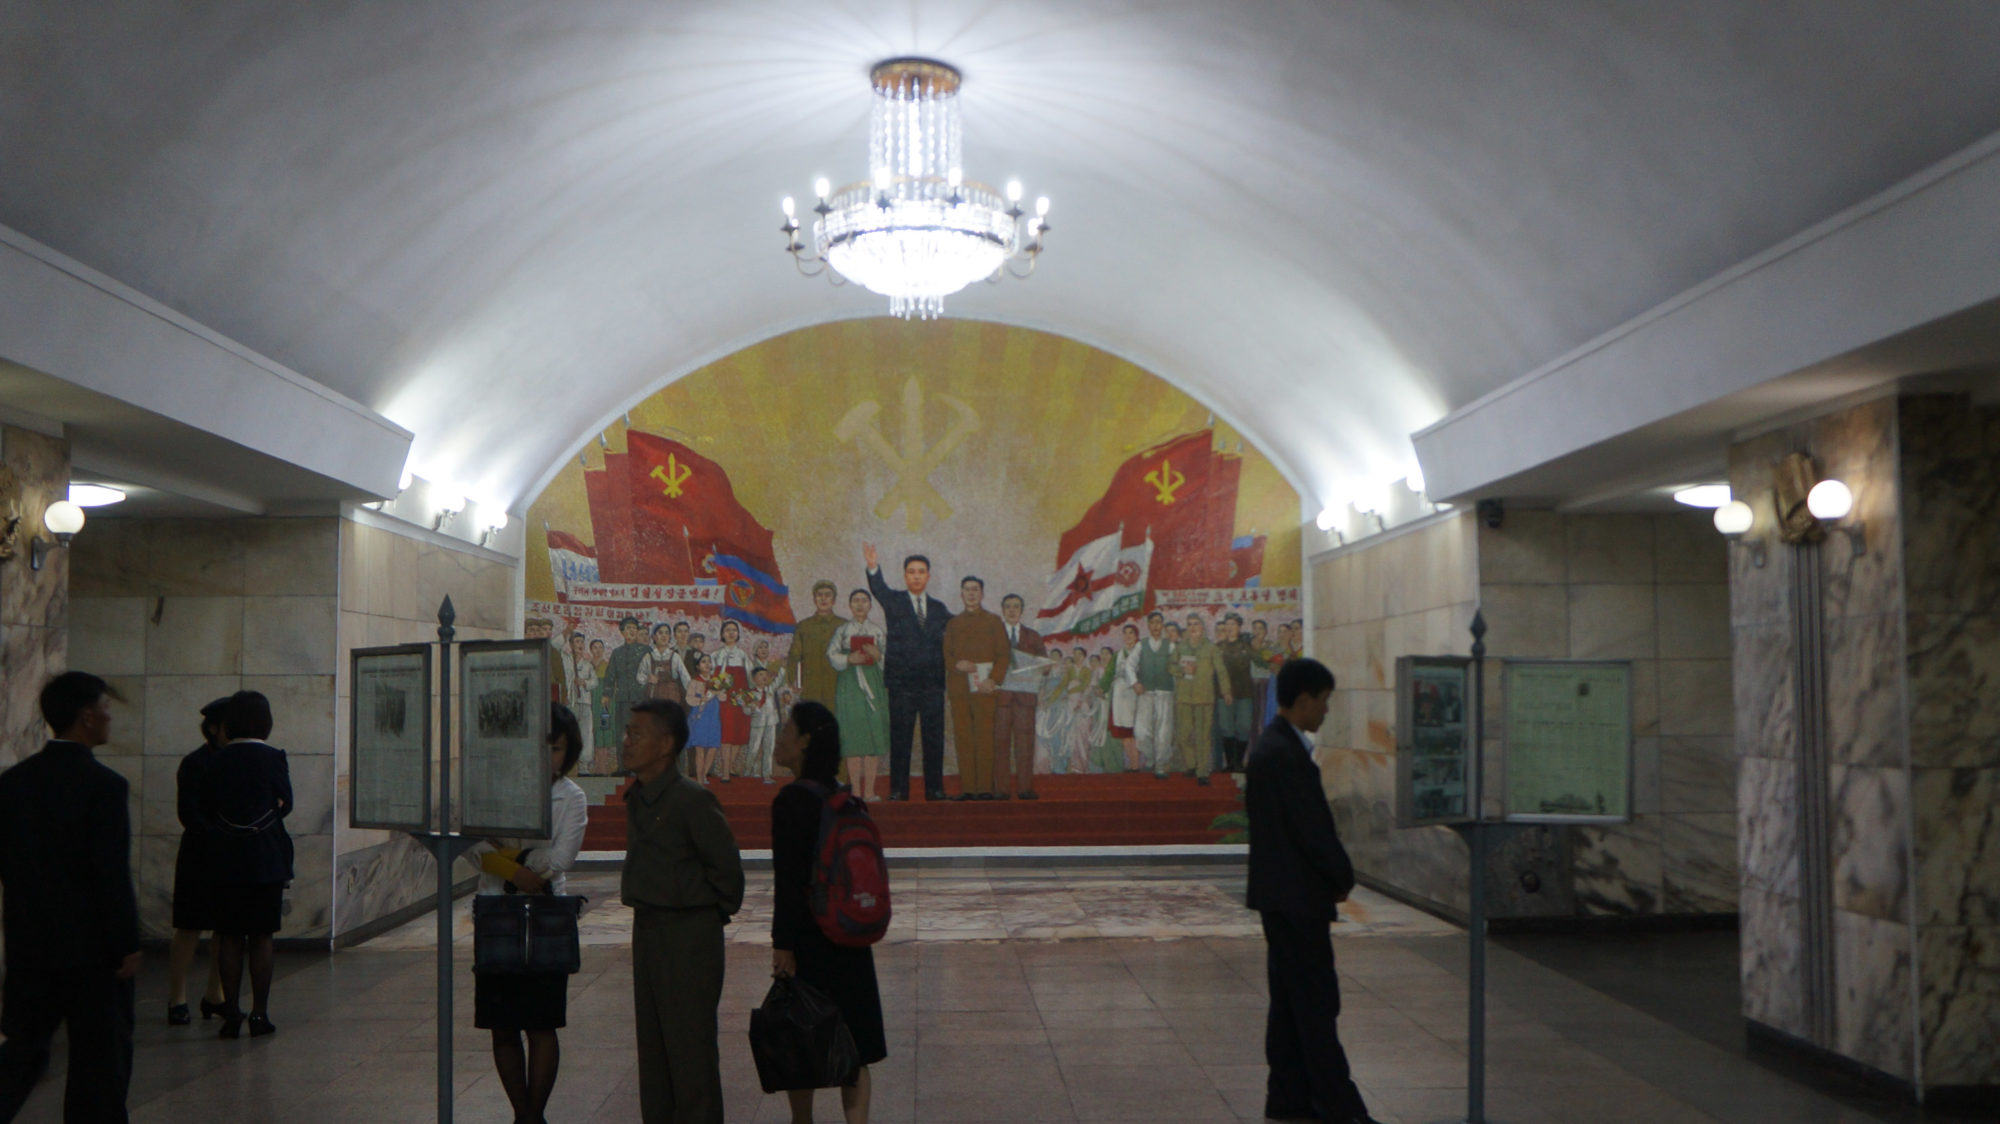 pyongyang-metro-torch-station.jpg